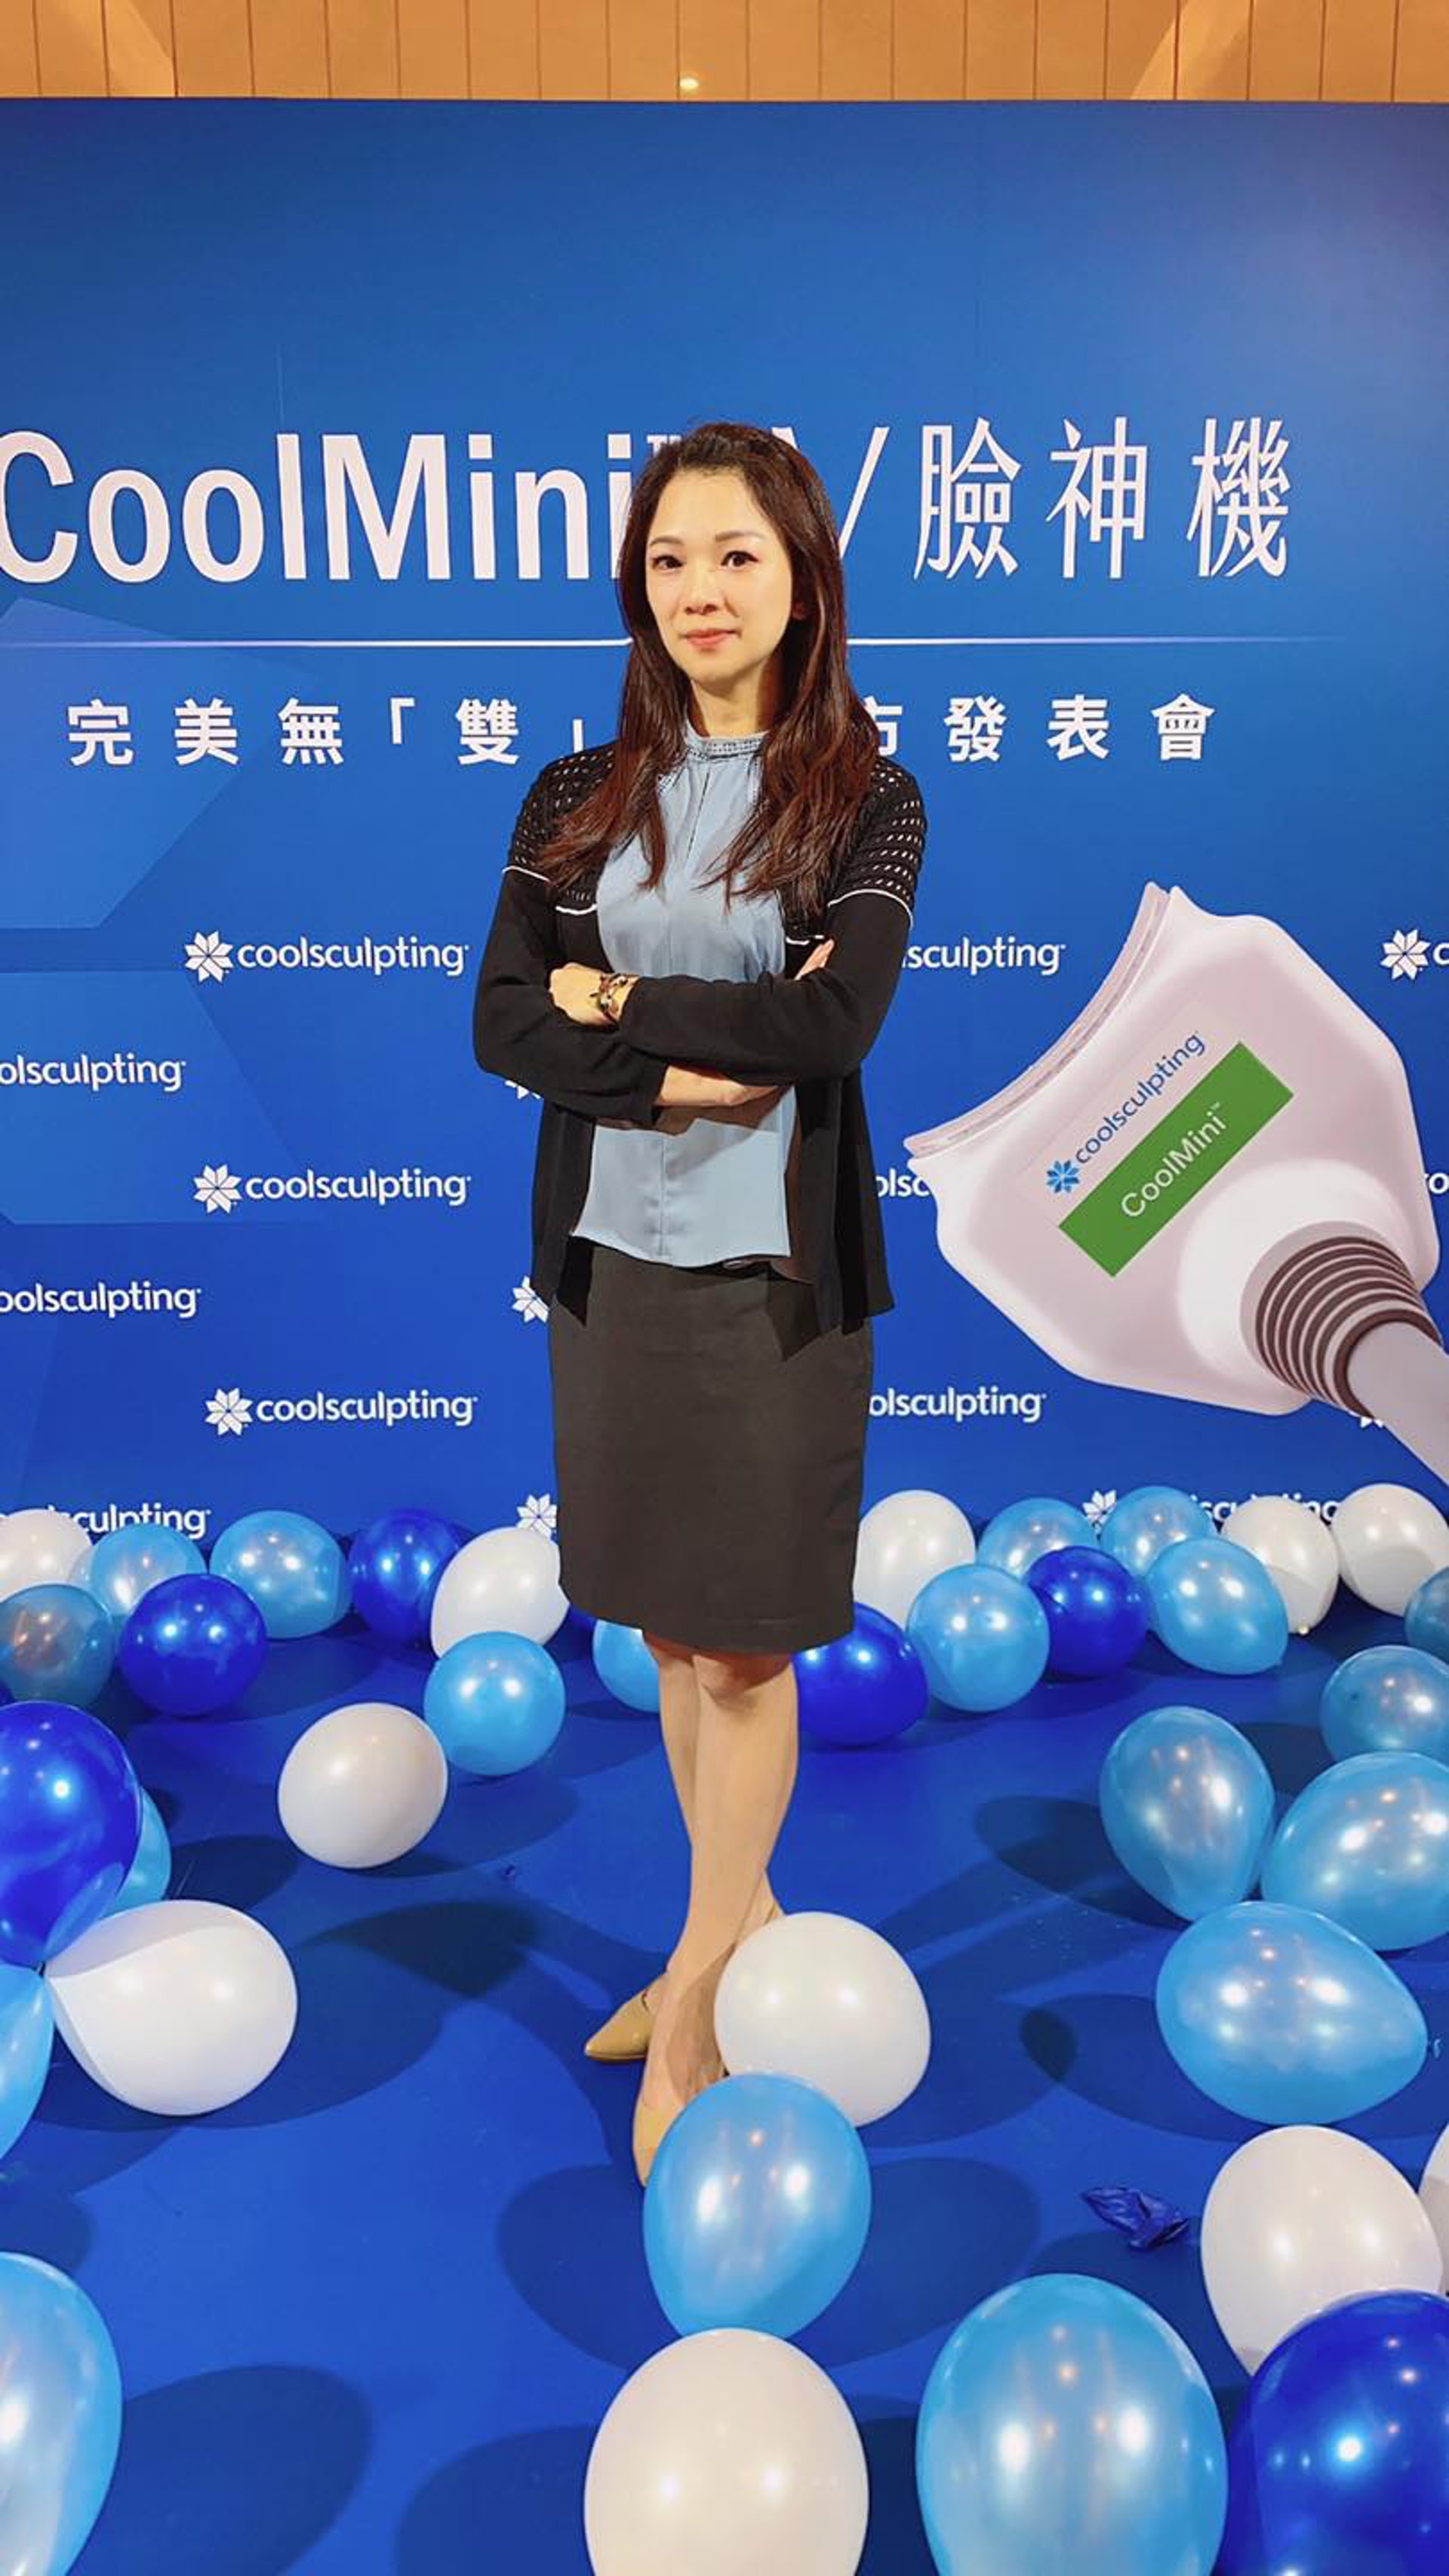 張宇琪是台灣知名婦科醫生（Facebook@張宇琪婦產科專科醫師更年期/抗衰老/婦科美學專家）